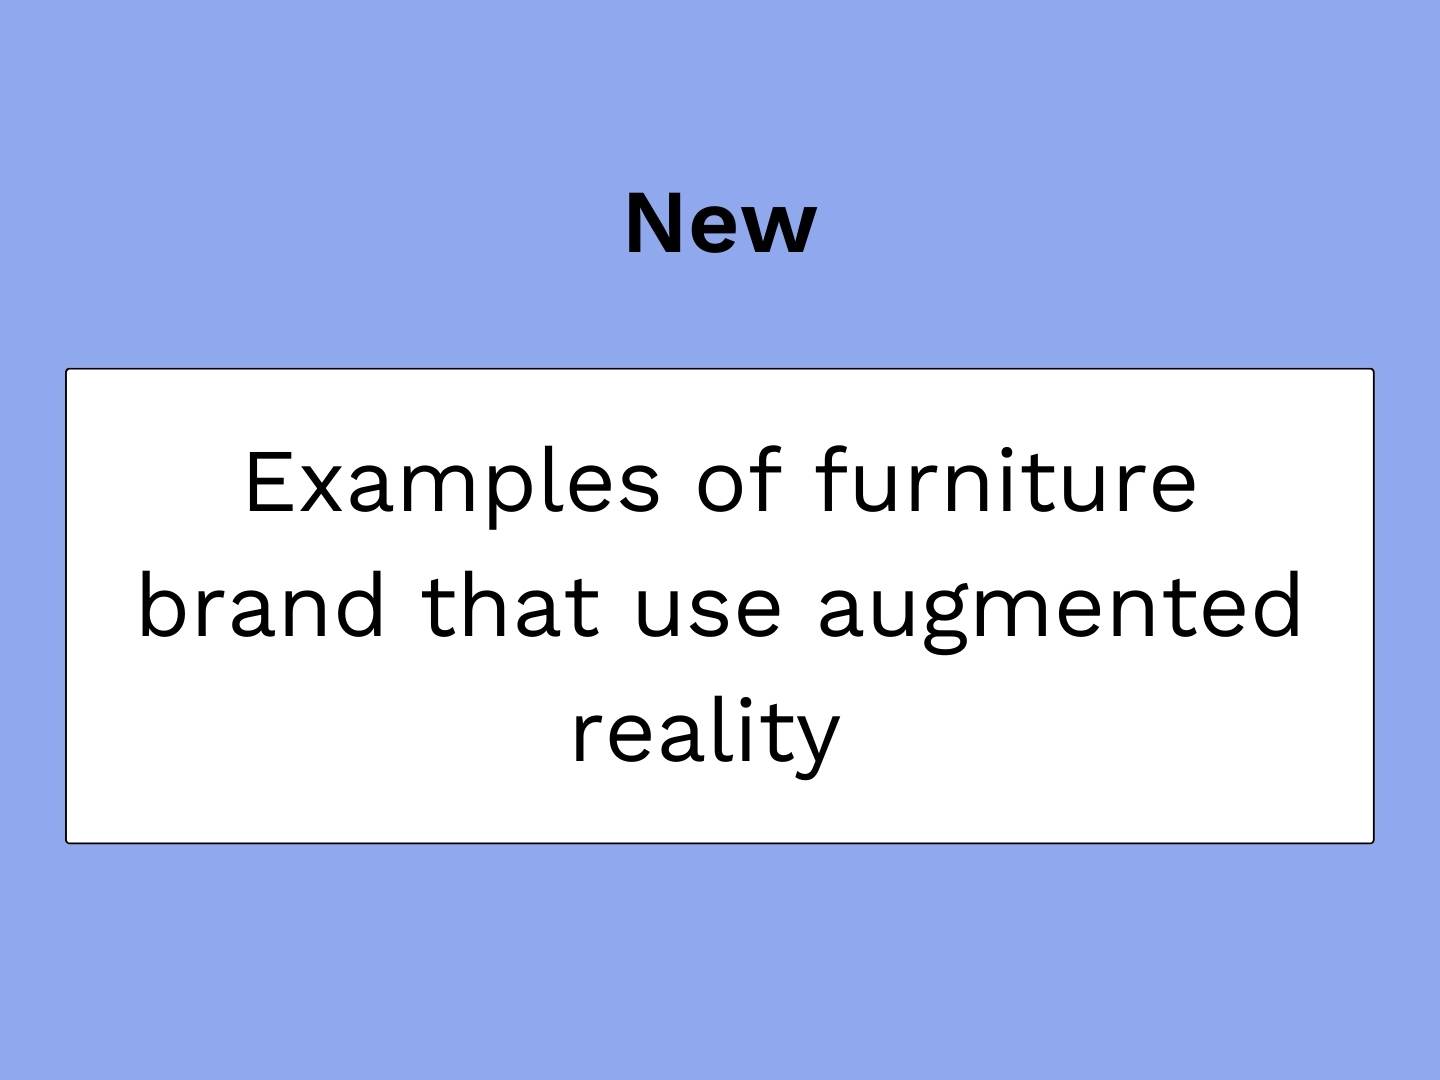 artículo del blog vignette sobre marcas de muebles que utilizan la realidad aumentada